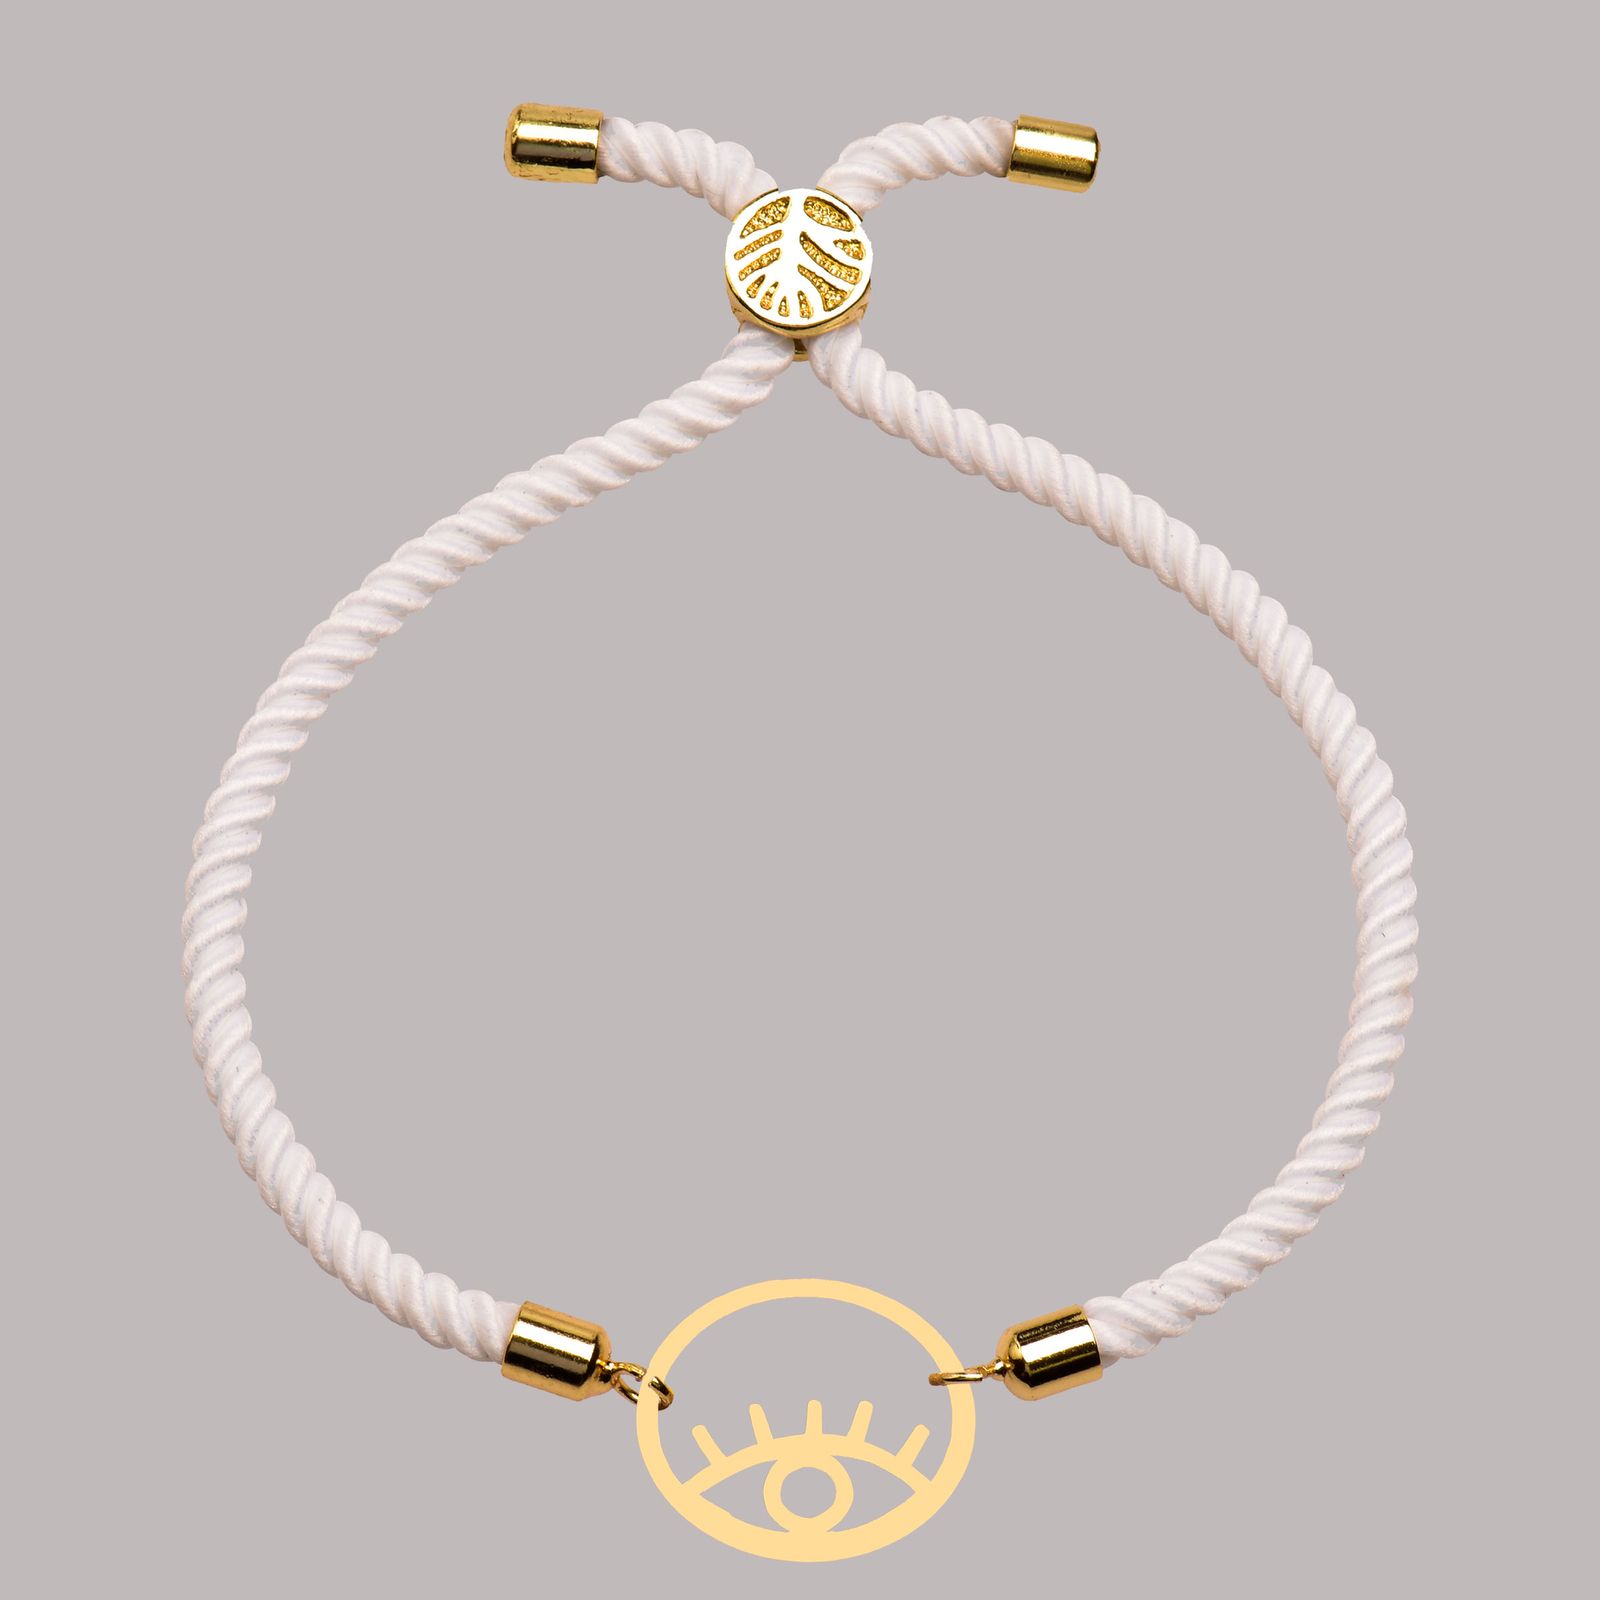 دستبند طلا 18 عیار زنانه کرابو طرح 18 مدل Kr102218 -  - 2